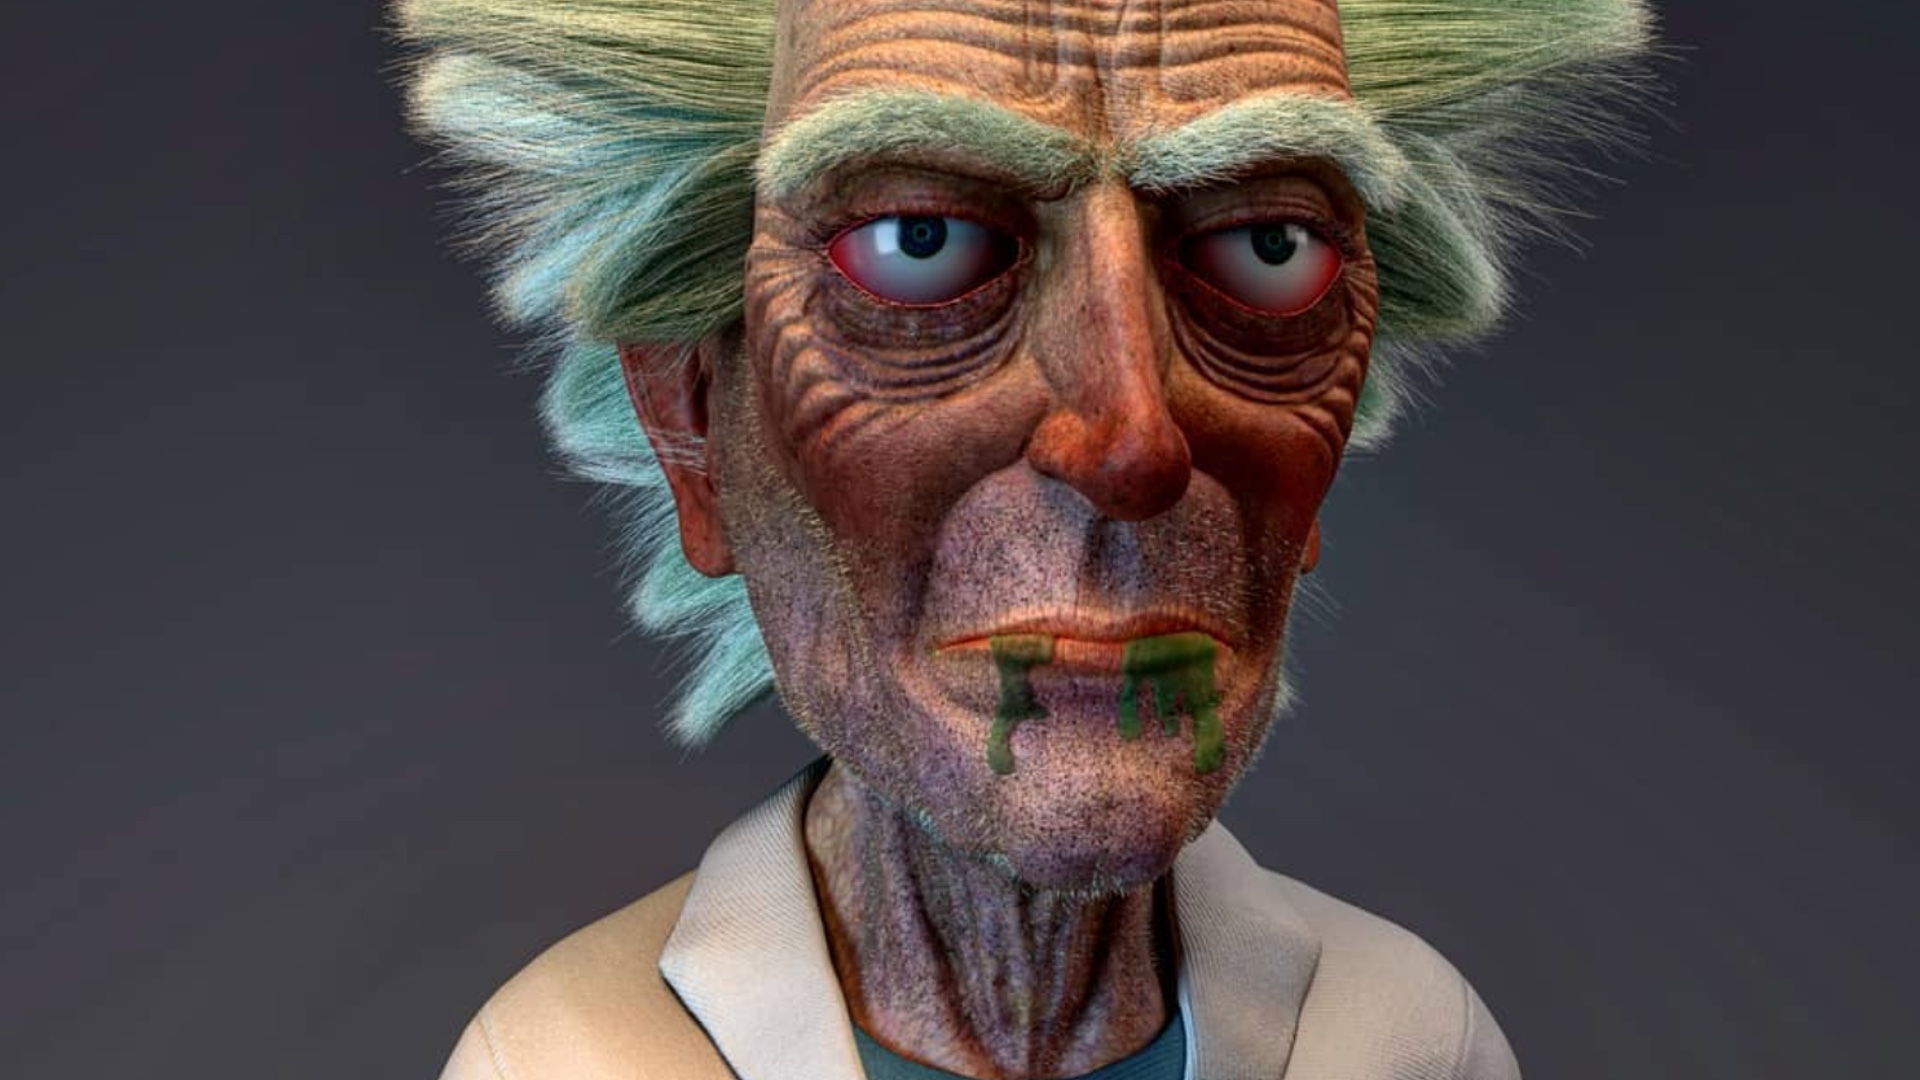 RICK AND MORTY Fan Art Shows a Crazy Hyper-Realistic Old Man Rick 3D Digita...